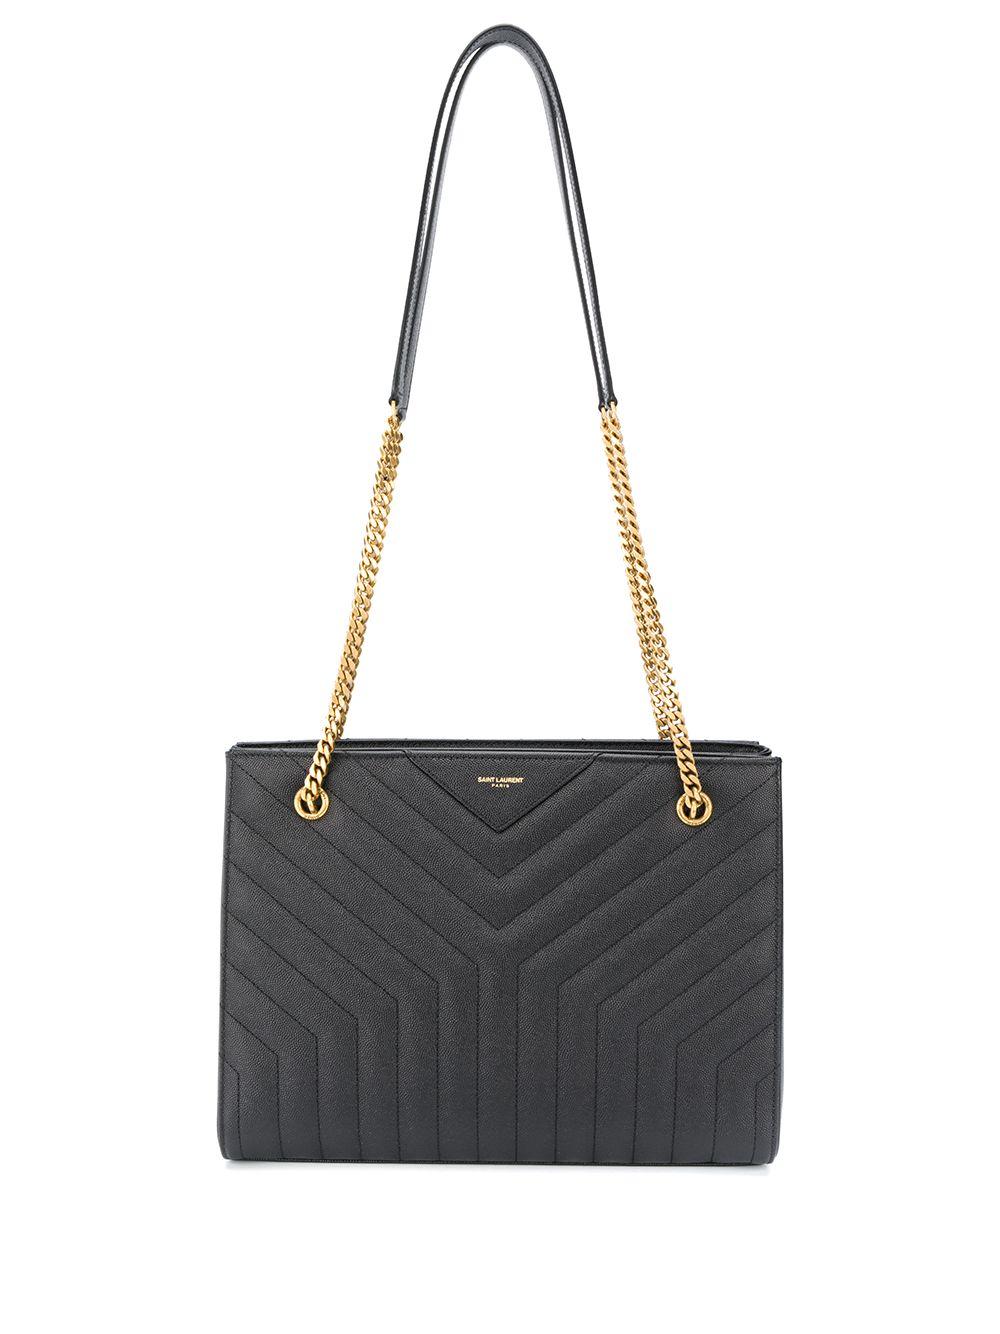 Saint Laurent Joan Shopping Shoulder Bag in Black | Lyst